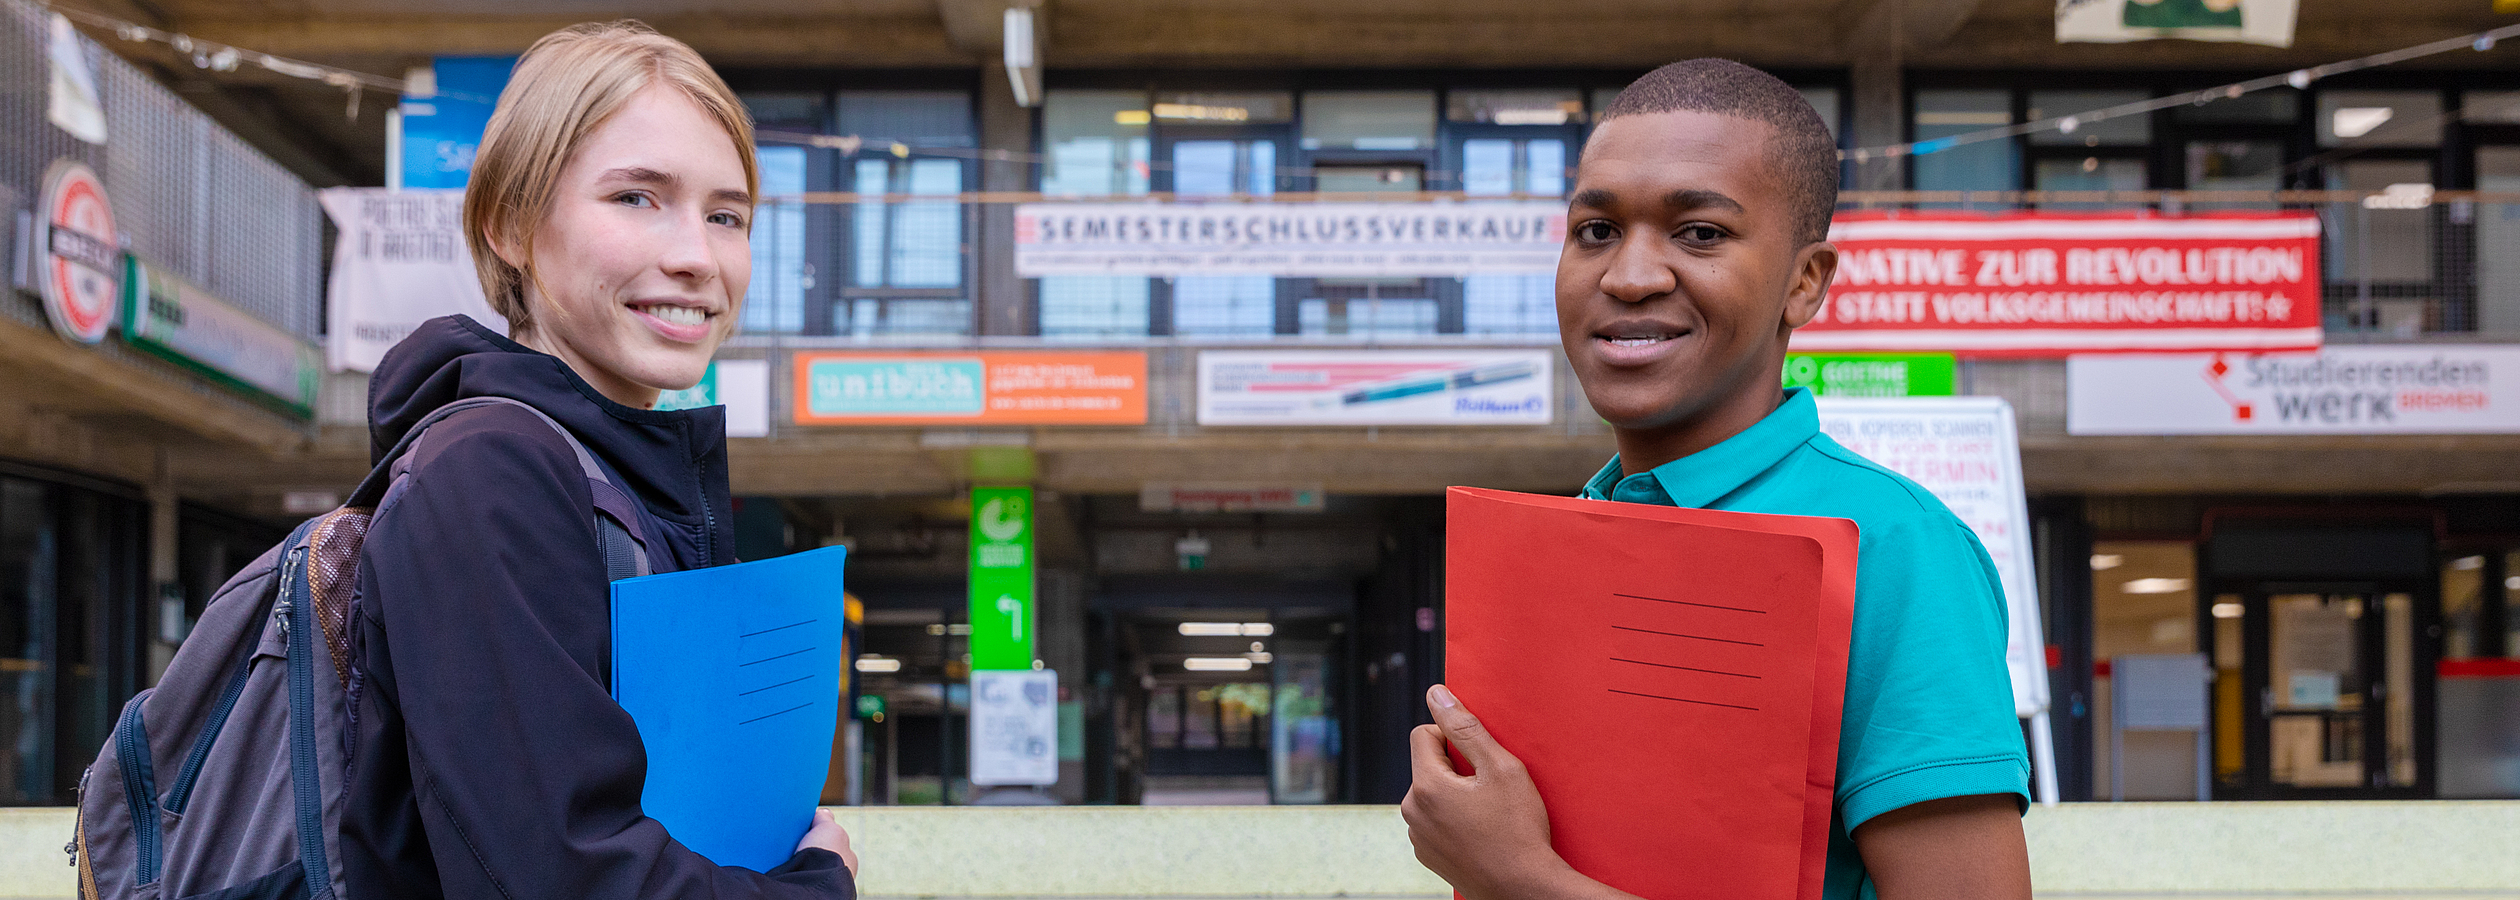 Zwei Studierende stehen mit Mappen in der Hand in der Glashalle